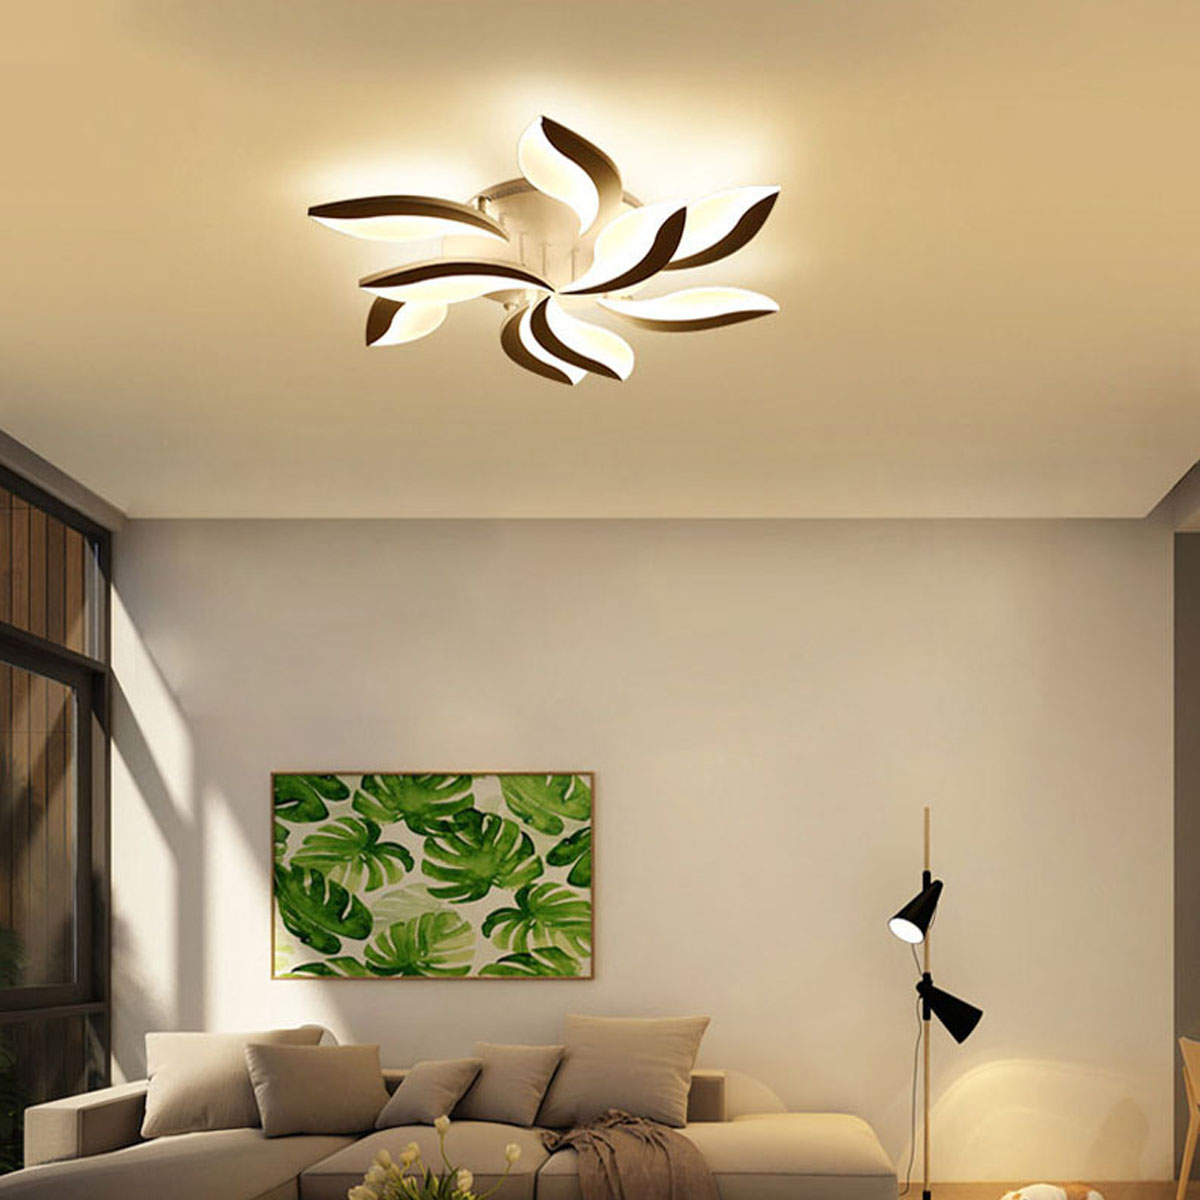 110-220V-LED-Ceiling-Light-Fixture-Pendant-Lamp-Lighting-Flush-Mount-Room-Chandelier-1794831-8